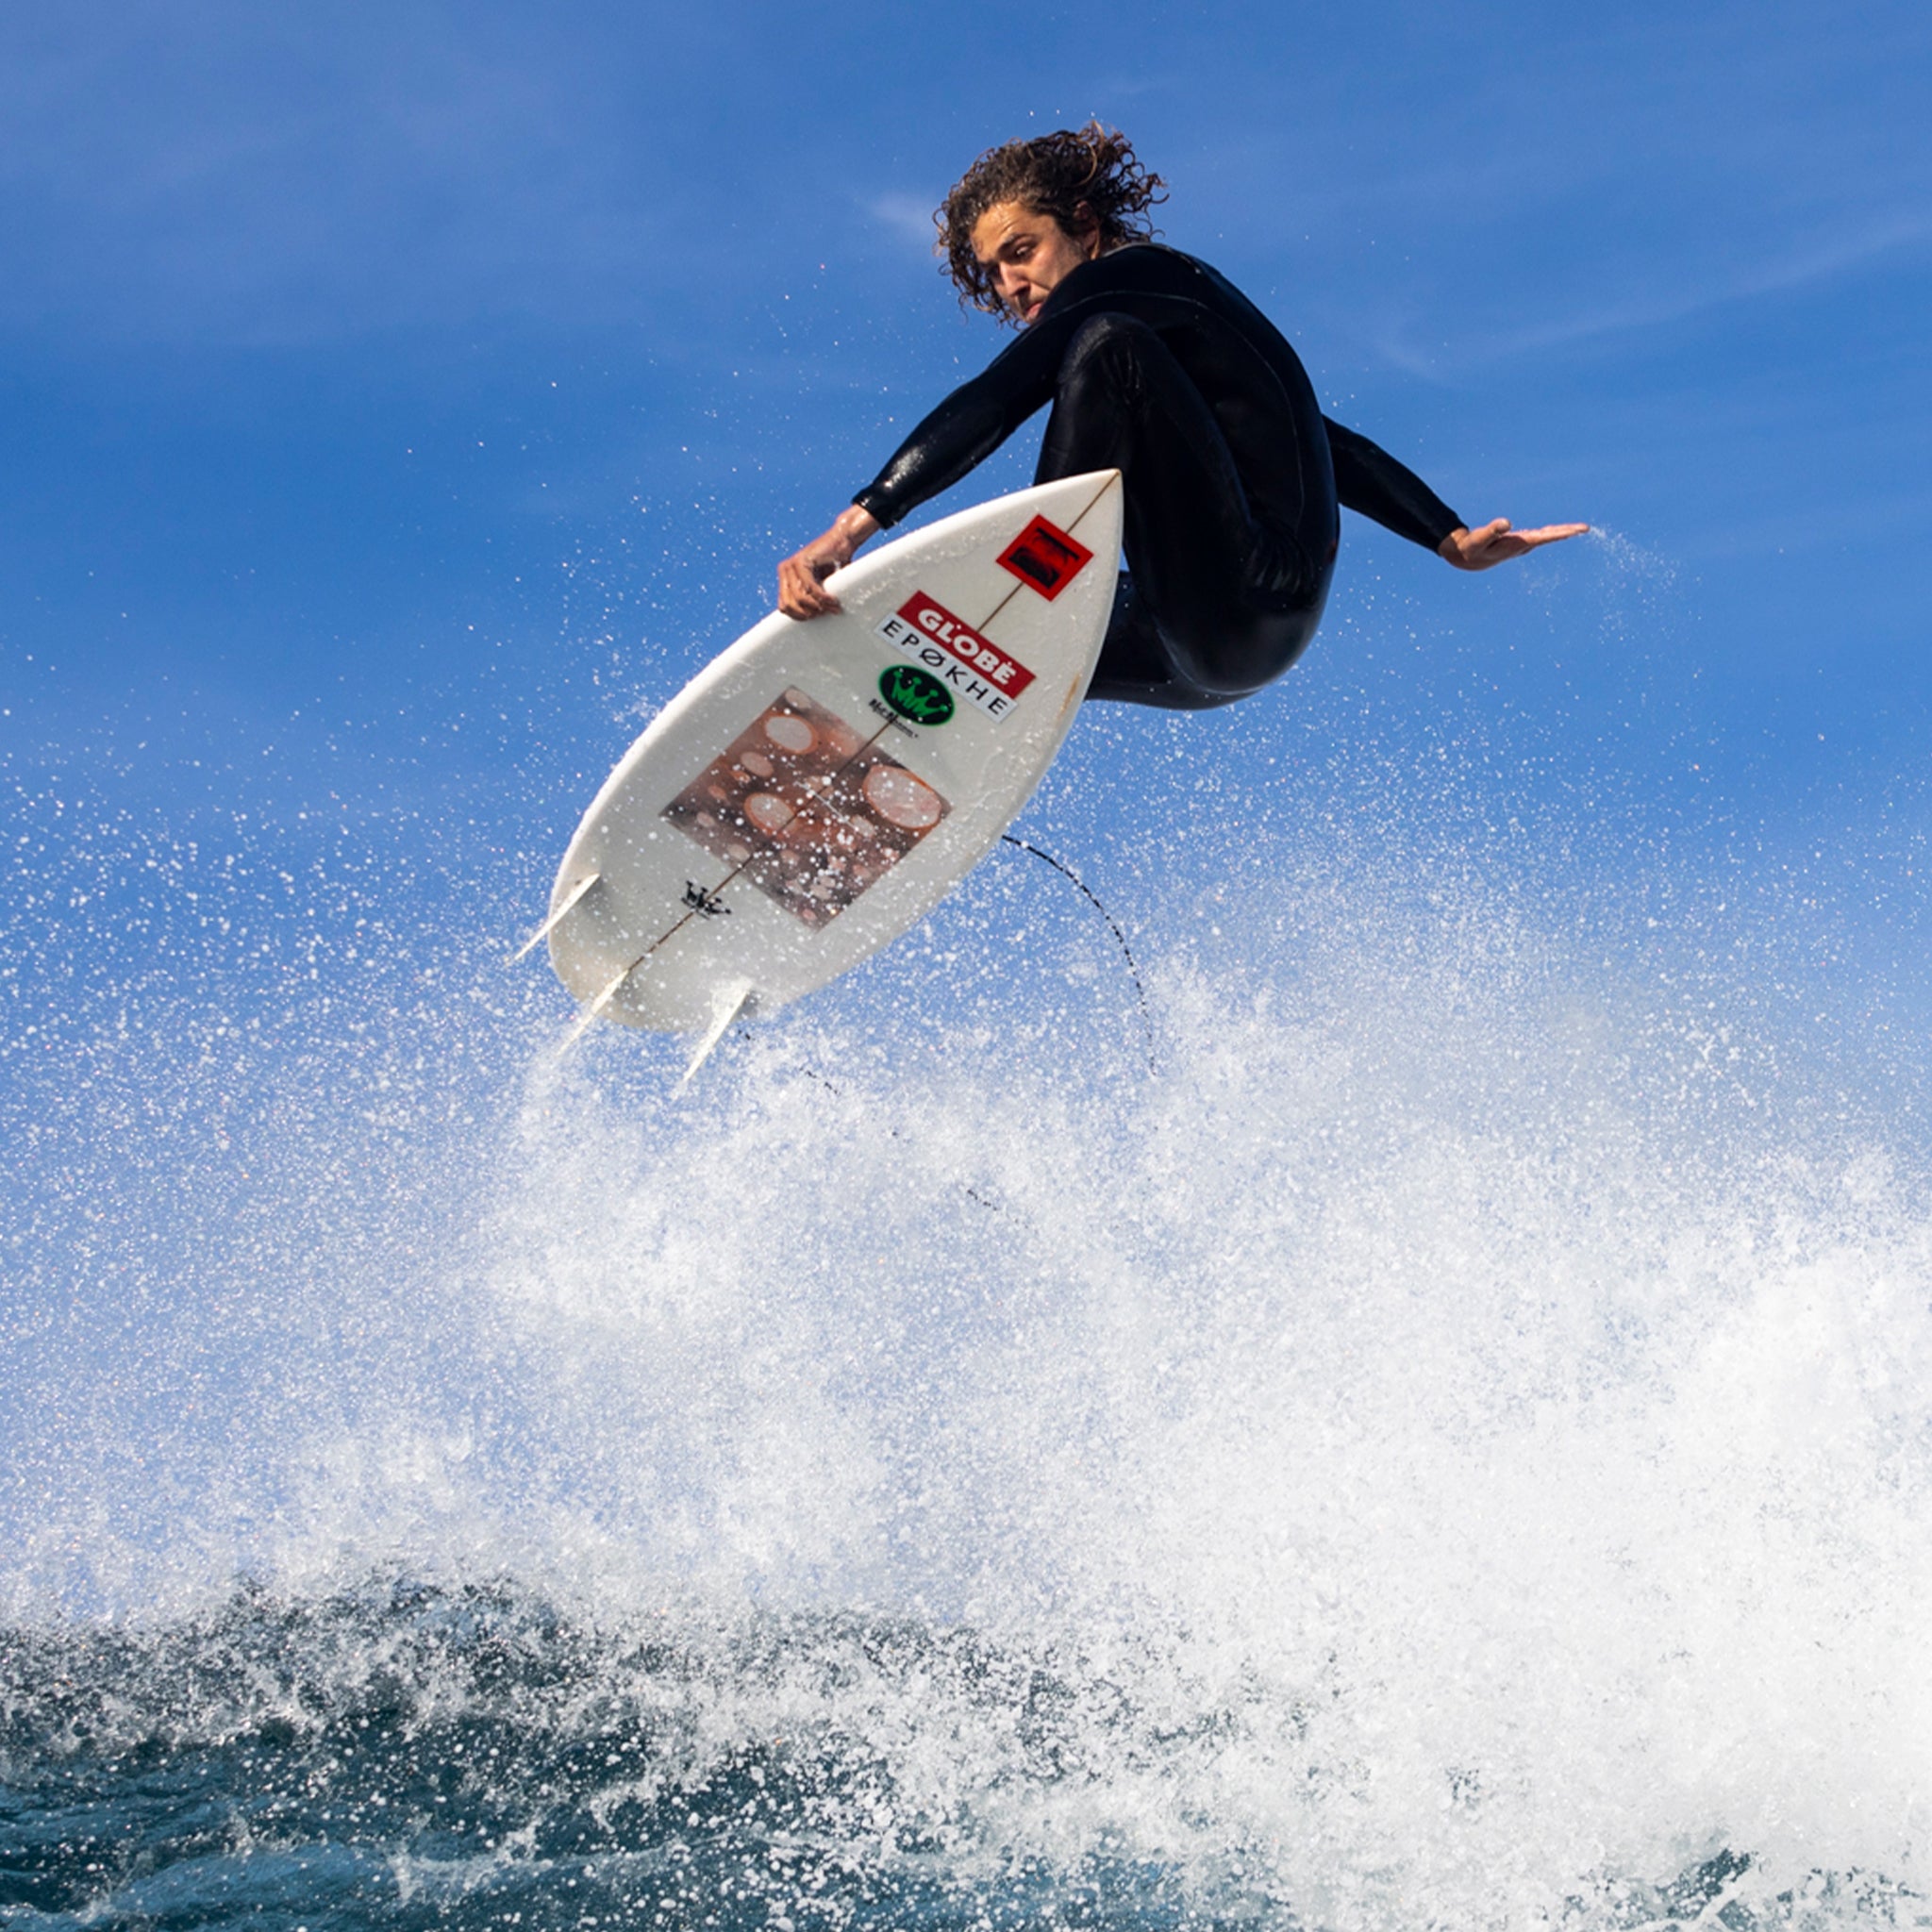 surfer doing an air